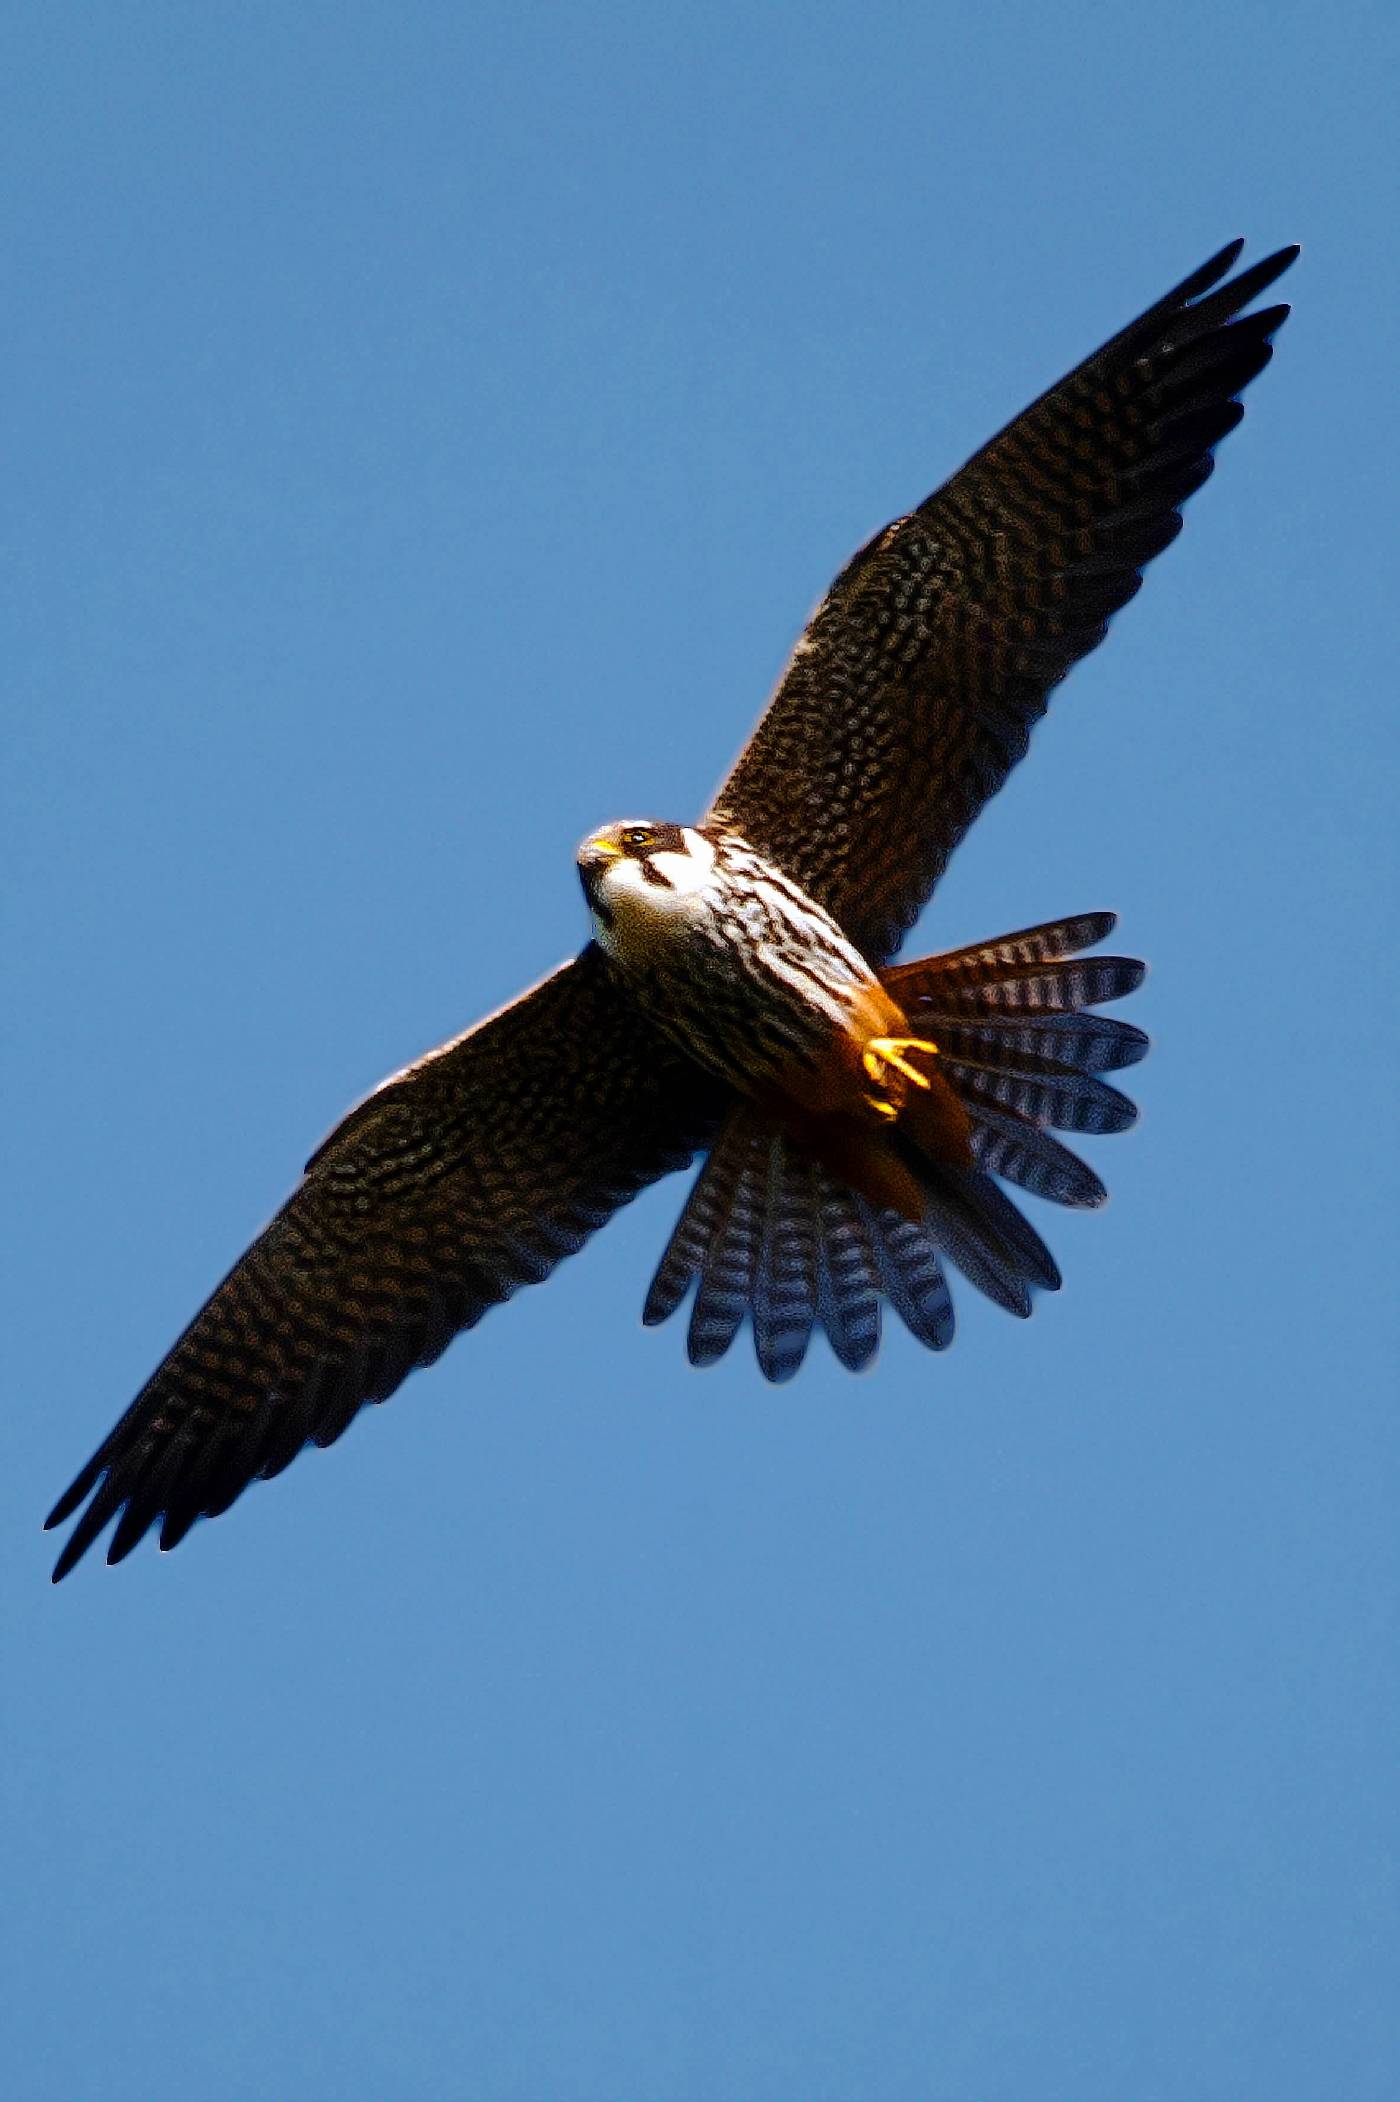 Falco image